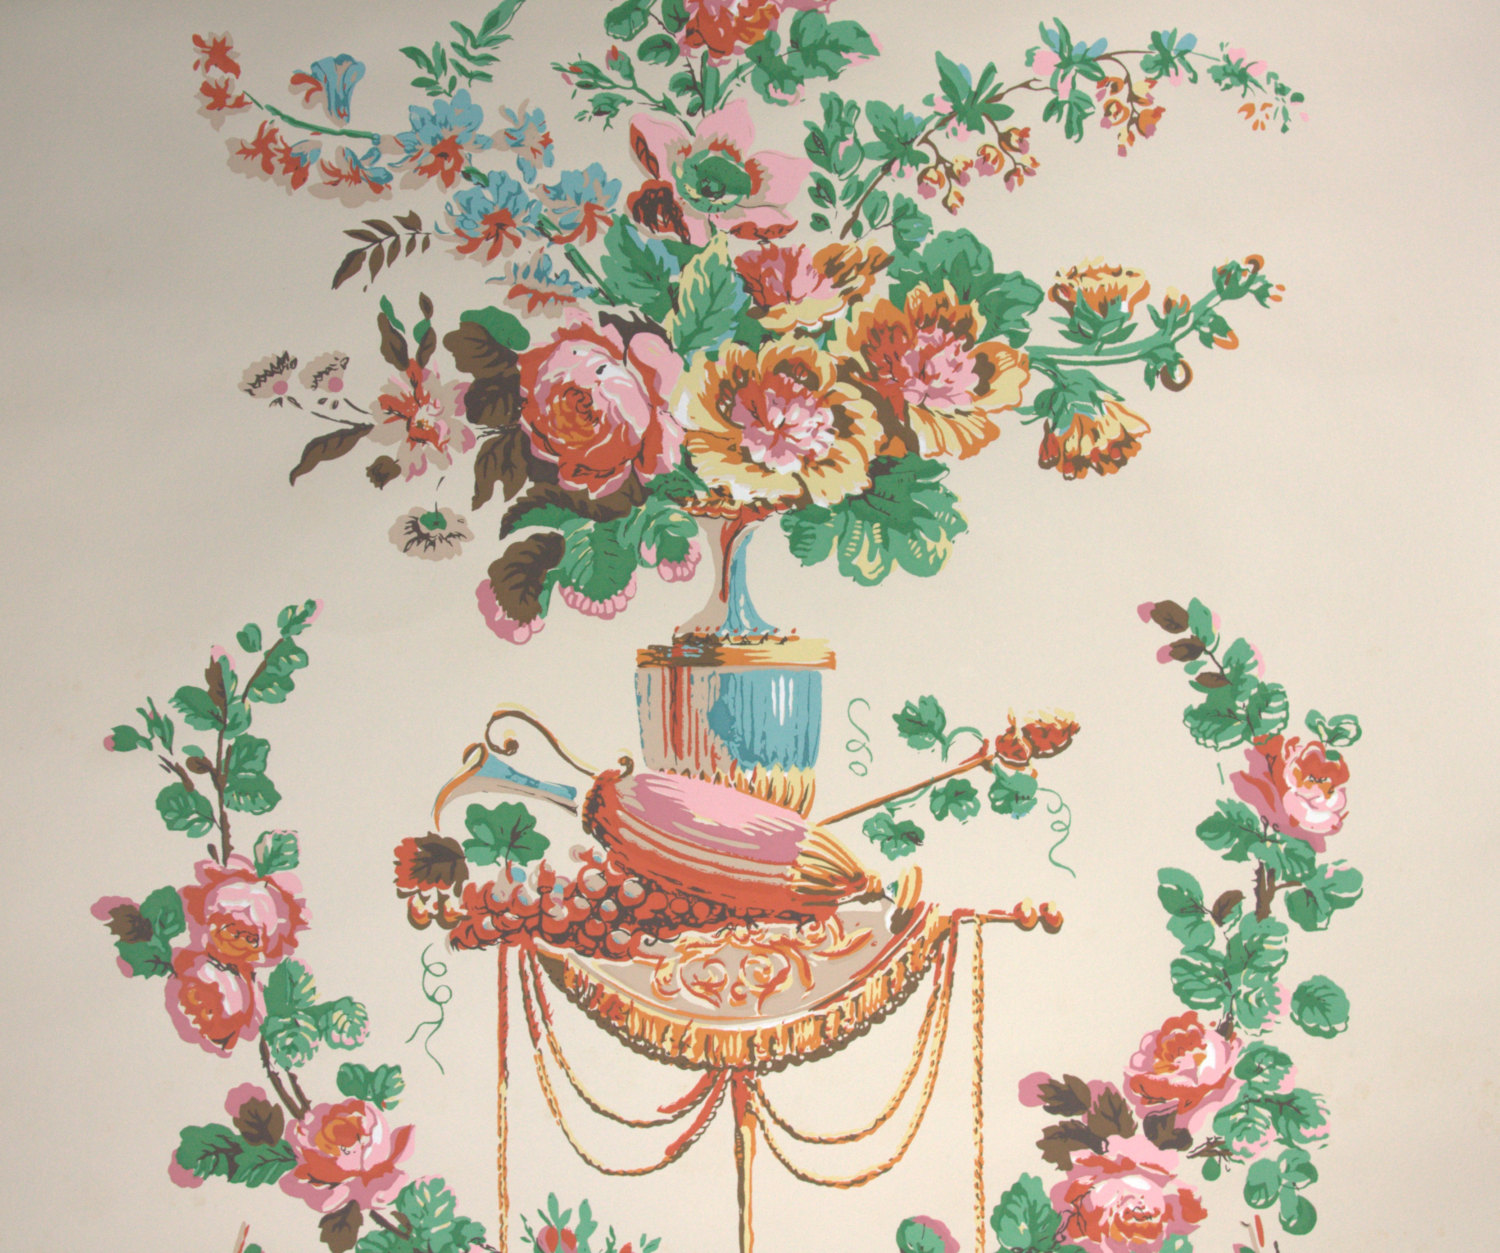 vintage style wallpaper,floral design,teacup,illustration,textile,flower